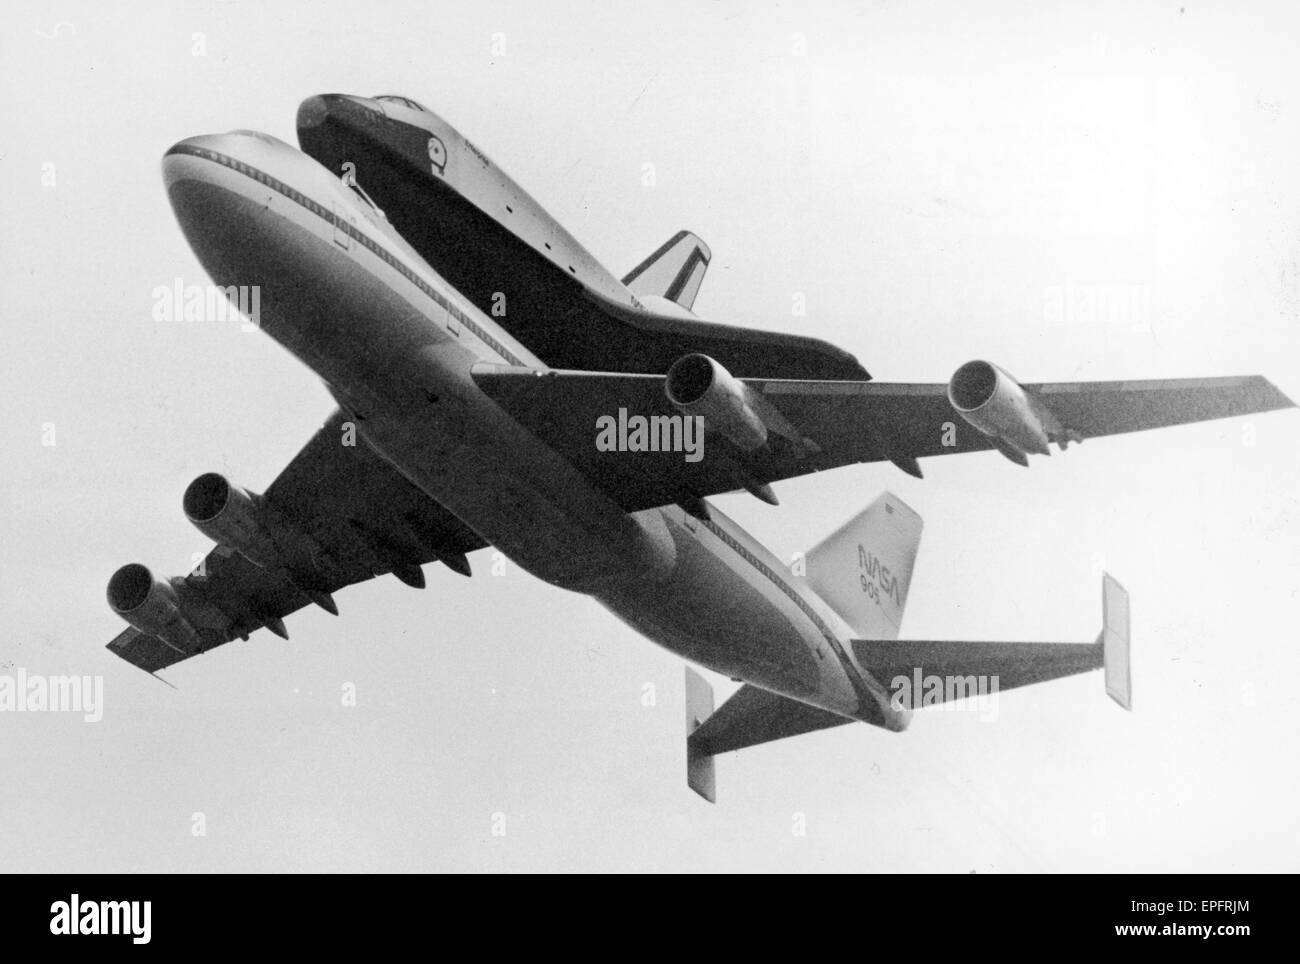 Space Shuttle Enterprise, Huckepack auf einem NASA 747 Jumbo Jet fliegt über Manchester Flughafen um 11:00, fegen im Grün-Bereich gehört bei 600 ft. Nach einer langsam gleiten auf der Route der Start-und Landebahn die Shuttle langsam kletterte bis zu 1000ft und verschwand Stockfoto